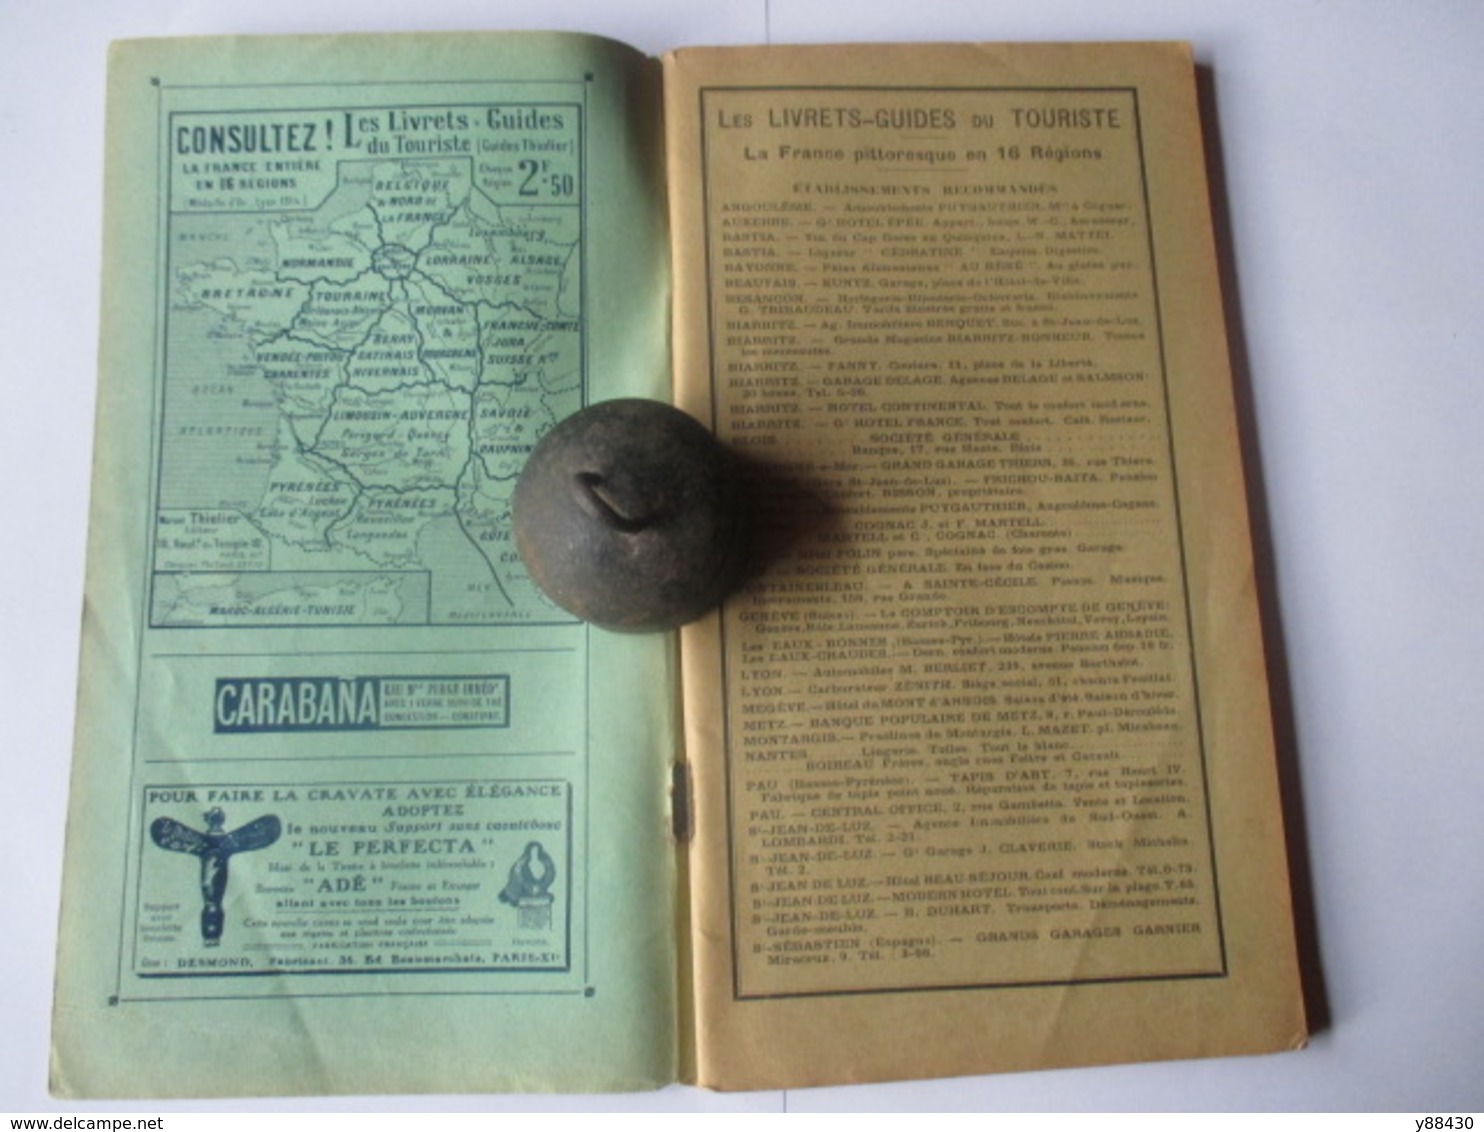 Livret Guides Du Touriste THIOLIER De 1923 - LUXEMBOURG / LORRAINE / ALSACE / VOSGES  - 124 Pages - 25 Photos - Dépliants Touristiques